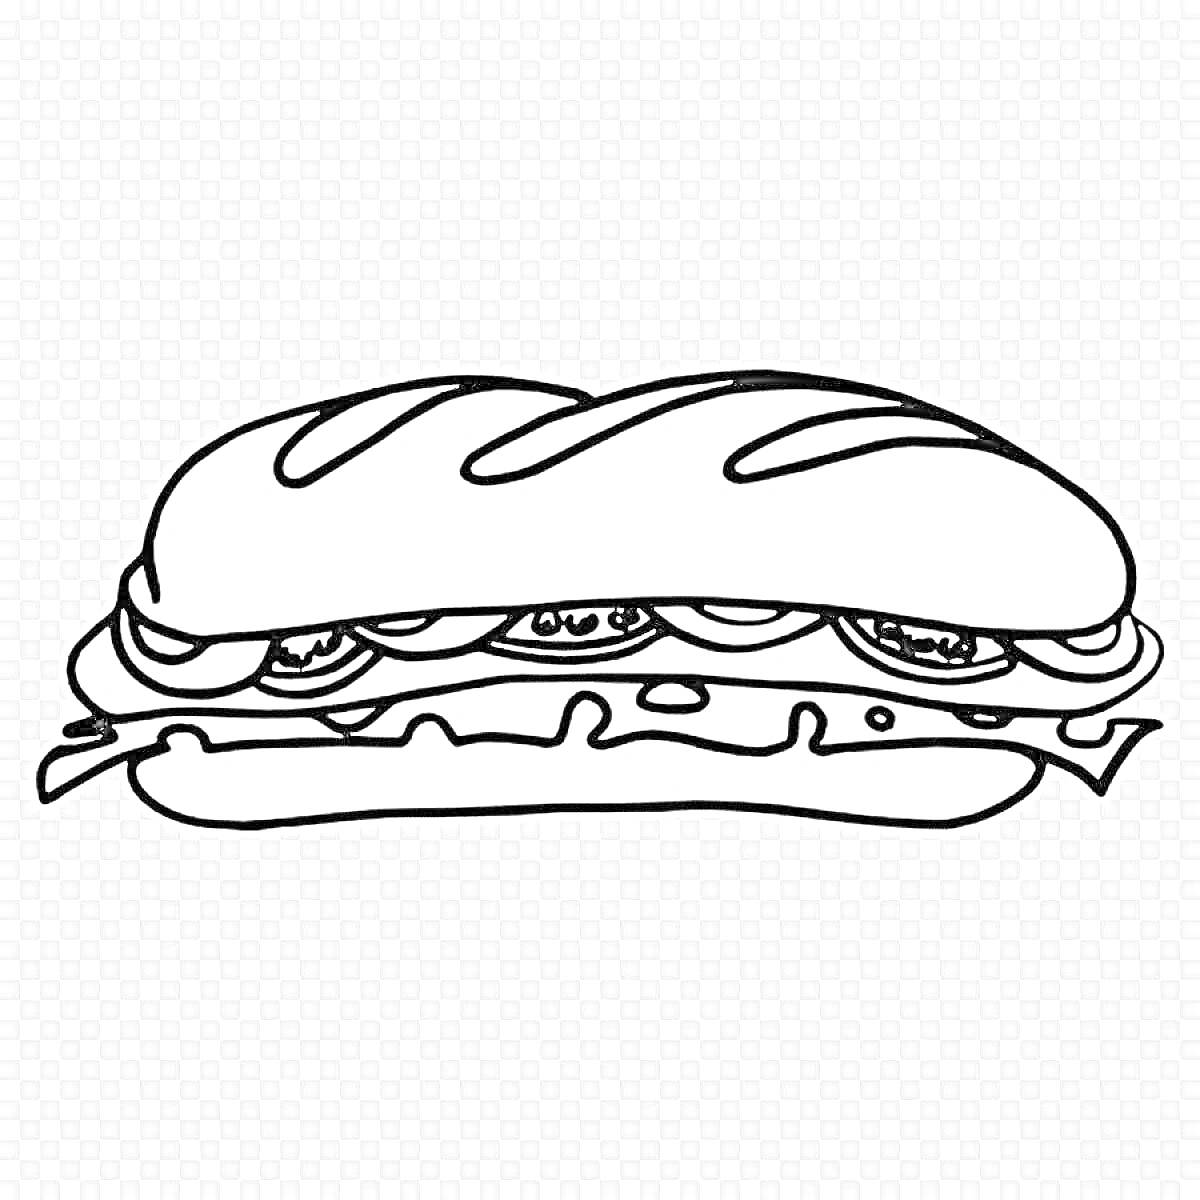 Раскраска Раскраска сэндвич с булкой, огурцом, луком, помидором и листьями салата